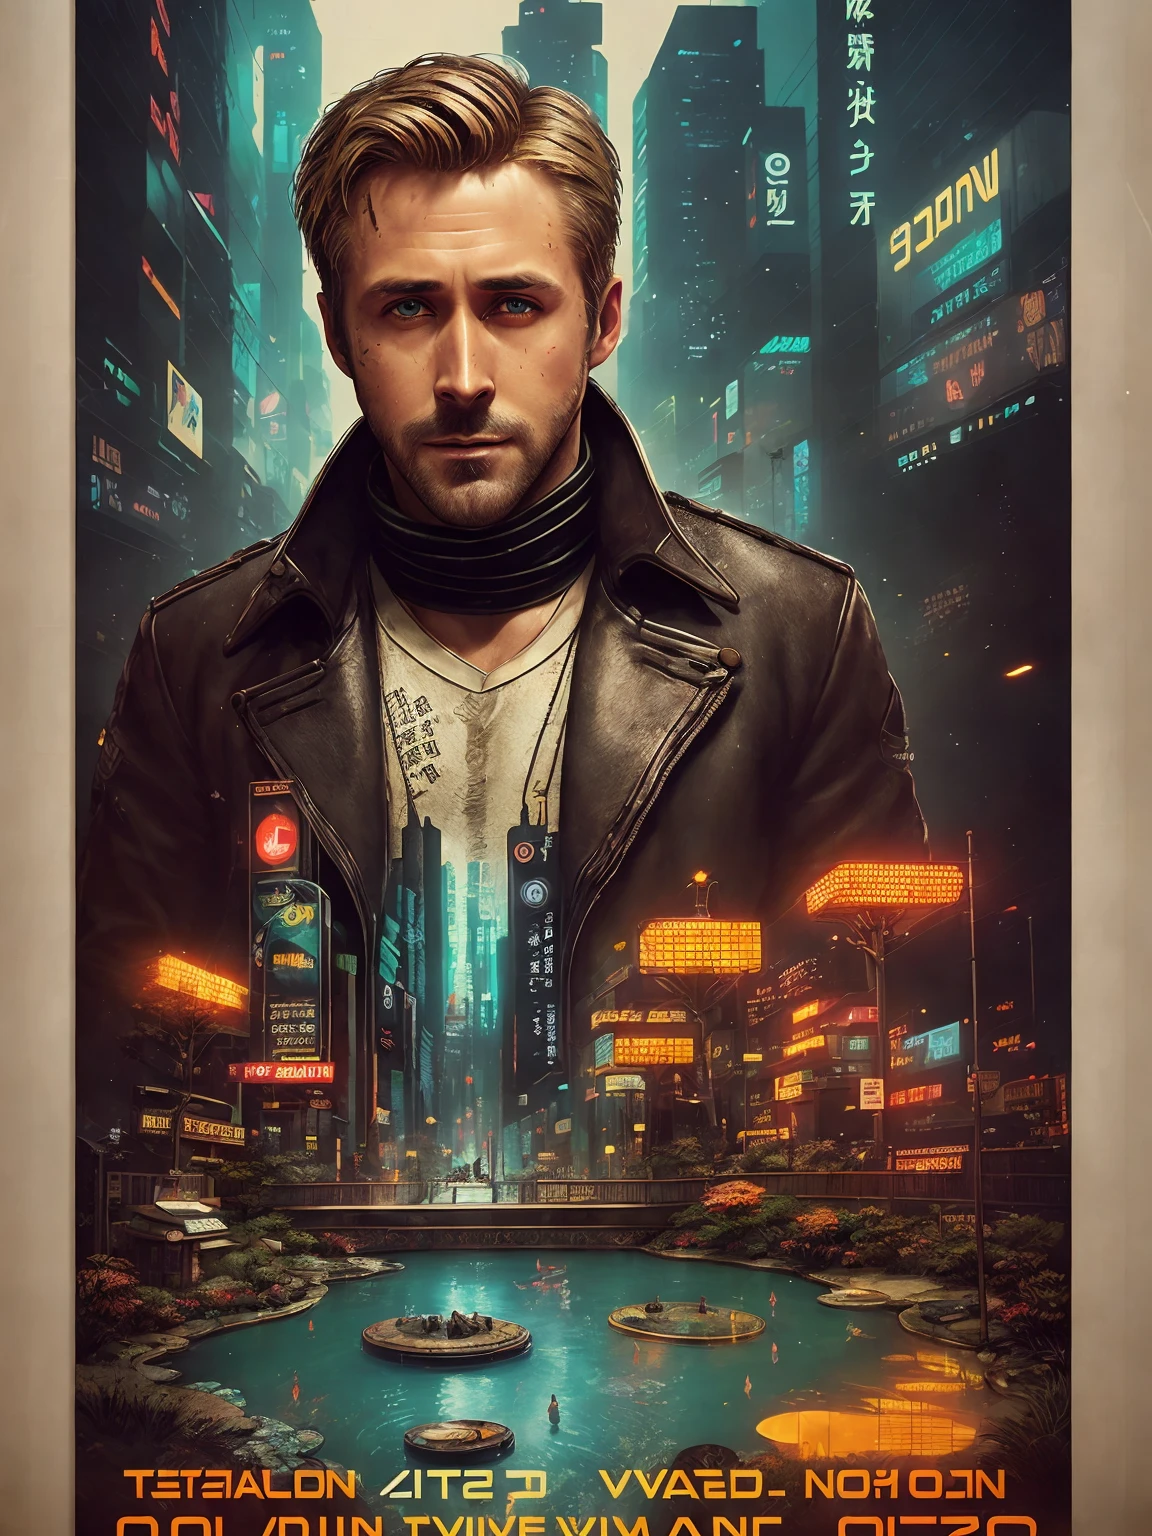 Ryan Gosling, 40 anos, de Blade Runner 2049, falha digital, (poster:1.6), cartaz na parede, pôster do filme, retrato, ((mudança de inclinação))
vestindo um velho casaco de pele de carneiro marrom com colar de lã suja,
(Jardim de pedras e lago japonês:1.2), carpa koi, (((bonsai))), ((estilo interior de alta tecnologia e futurismo)), (((rosto altamente detalhado))),
((textura ultradetalizada do rosto e da pele)), intrinsecamente detalhado, detalhes finos, hiperdetalhado, traçado de raio, dispersão subterrânea, iluminação suave difusa, Profundidade superficial de campo, por Oliver Wetter,